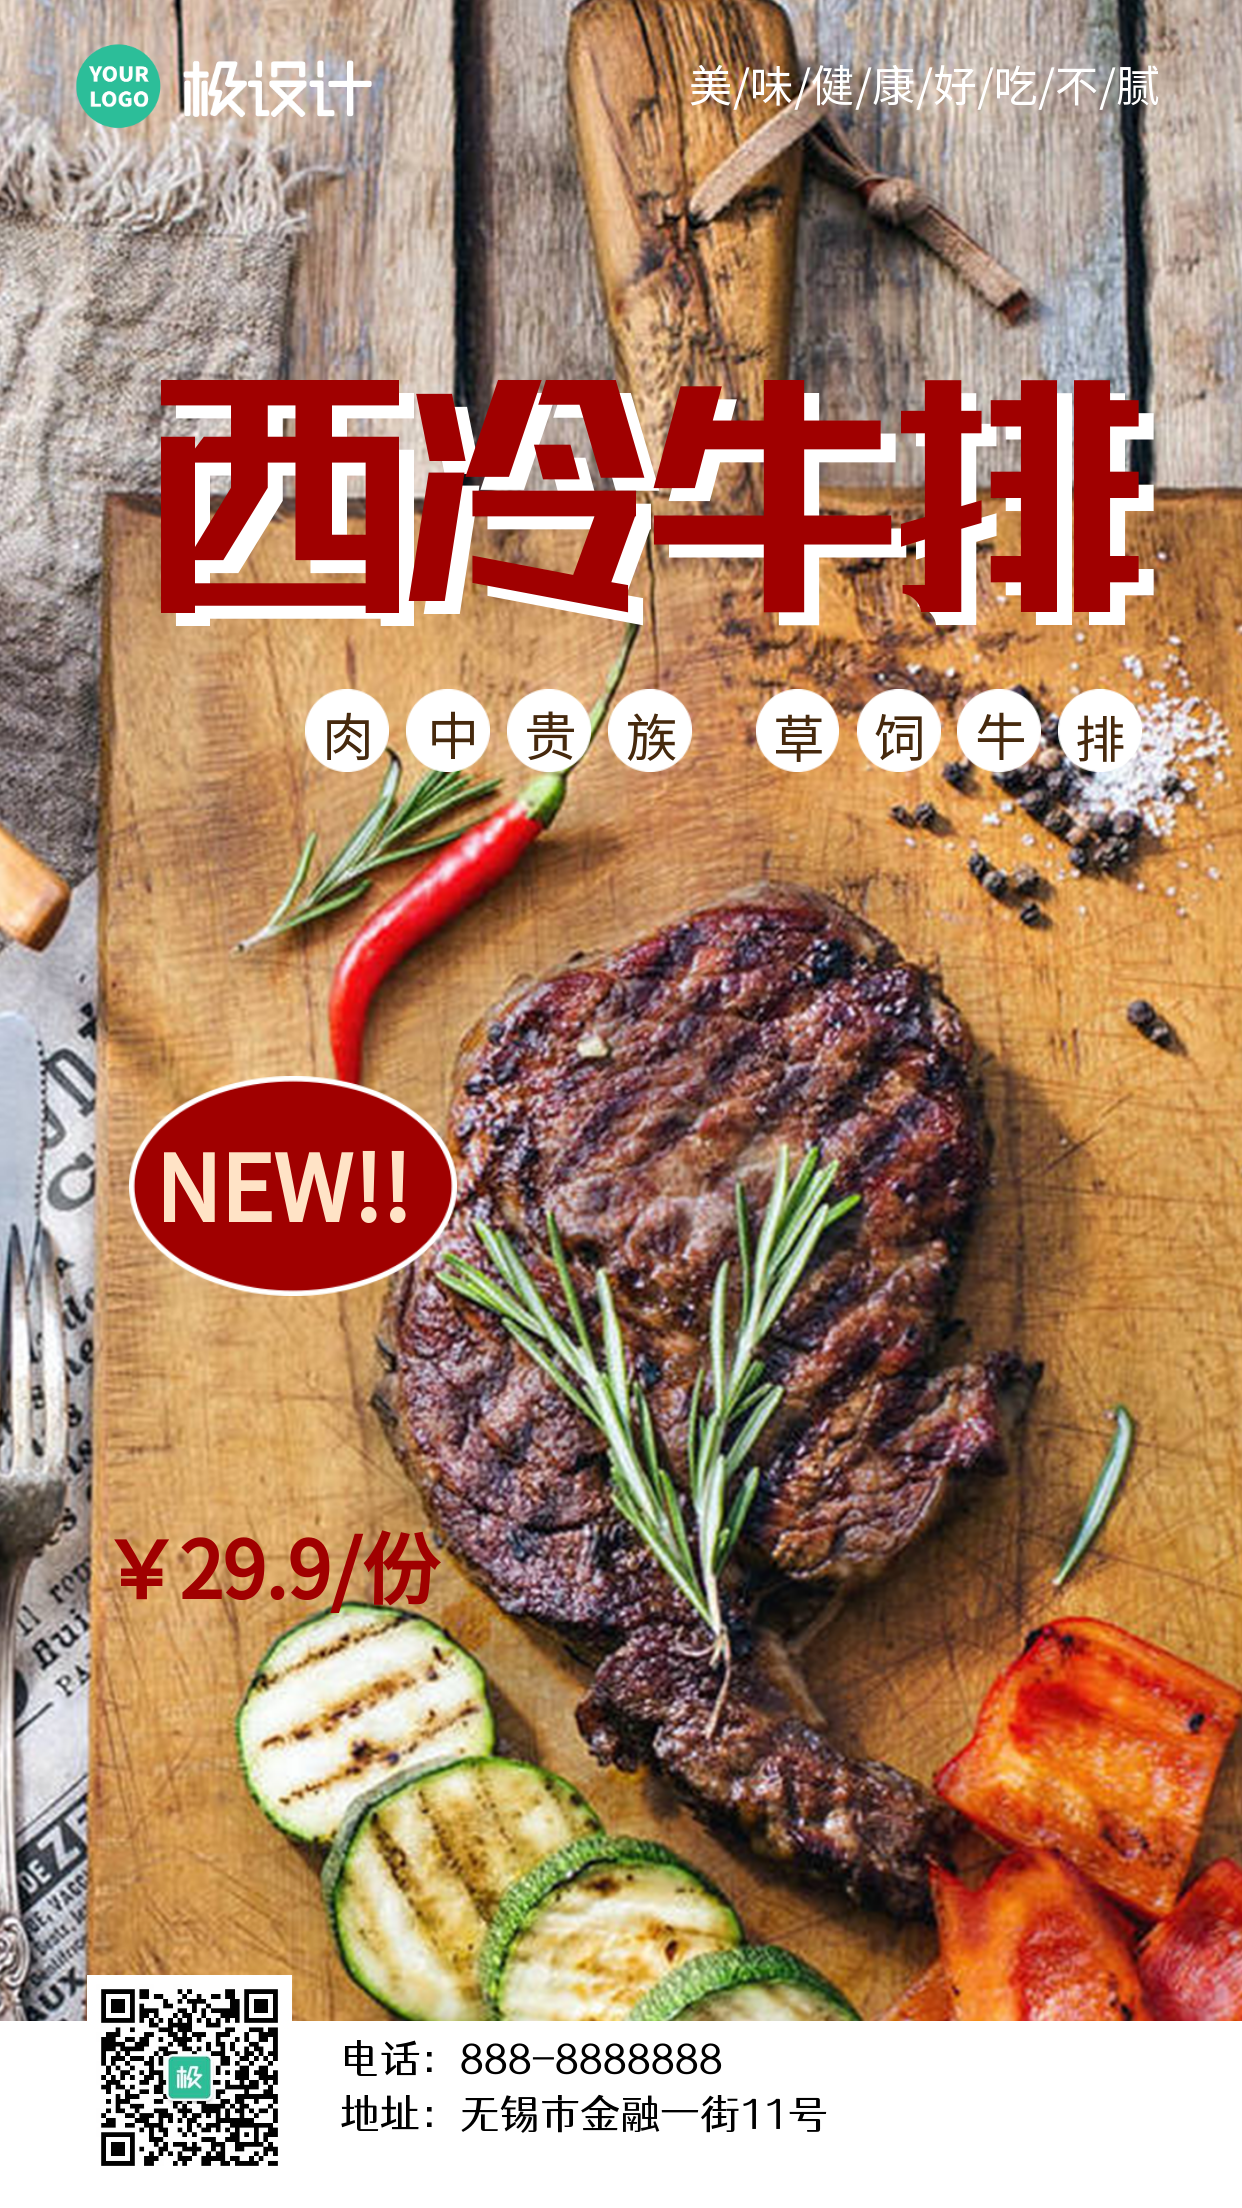 西方餐饮美食牛排新品展示商业海报